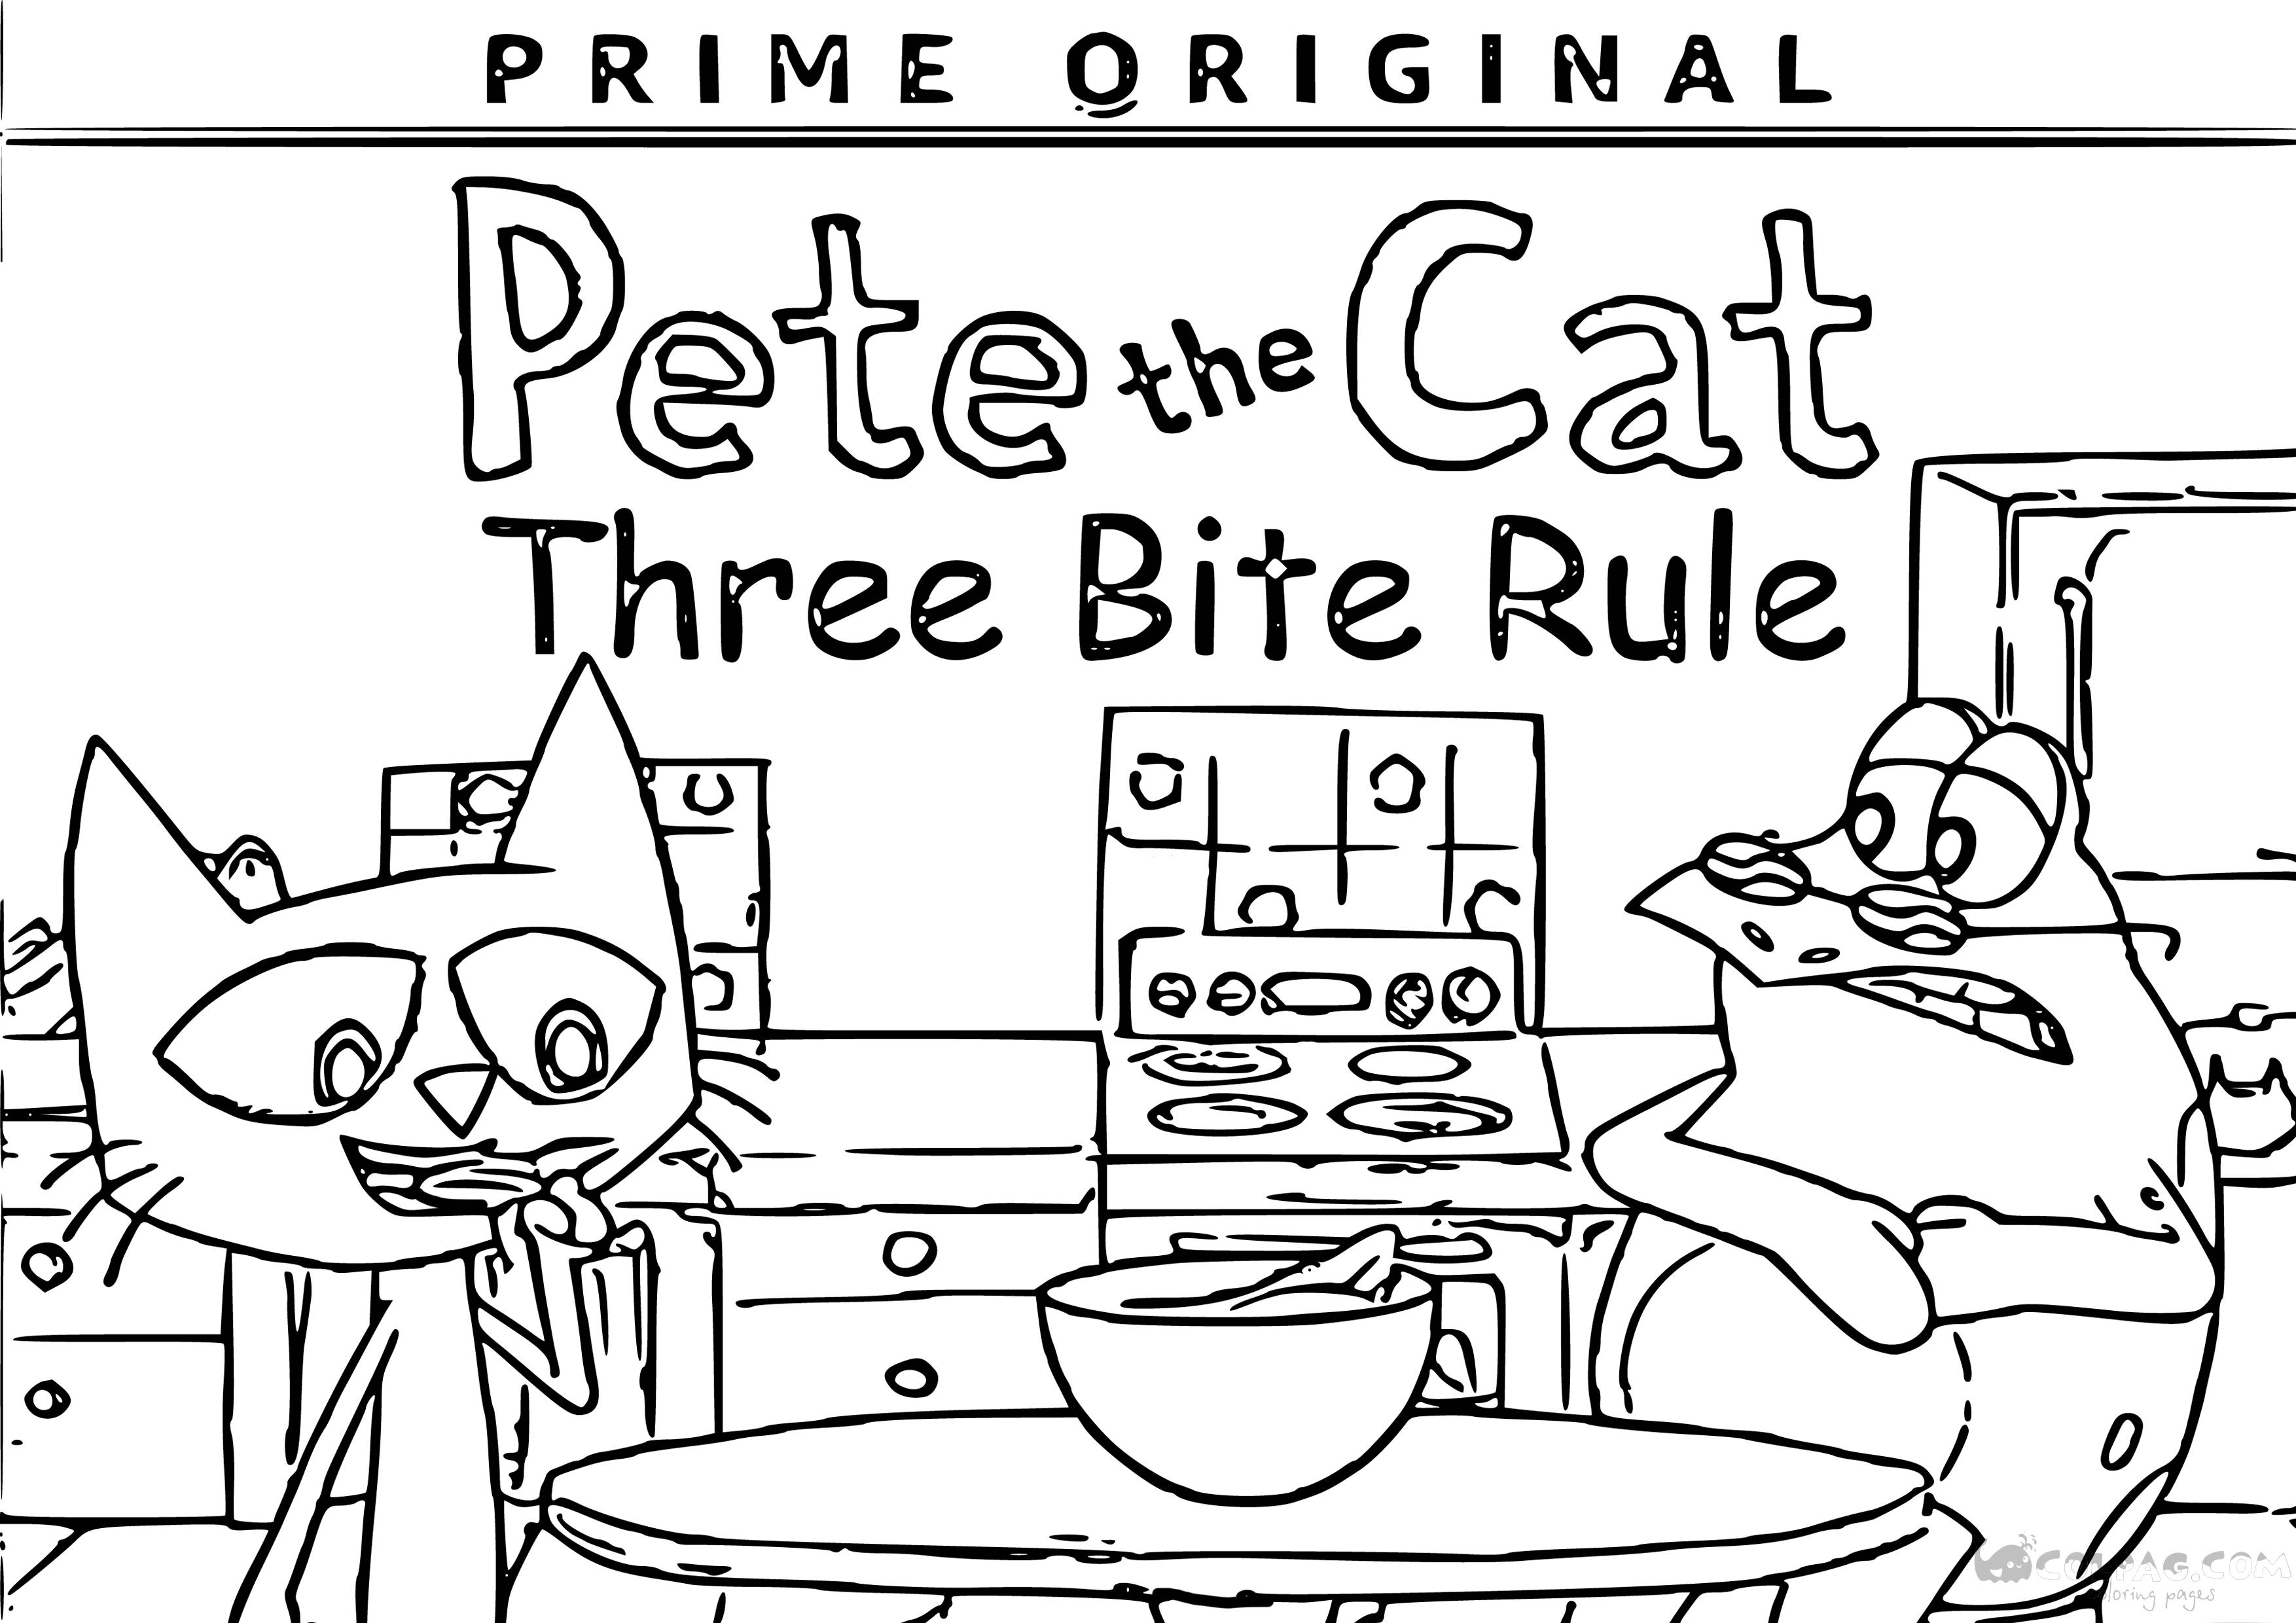 Ausmalbilder von Pete die Katze zum Ausdrucken